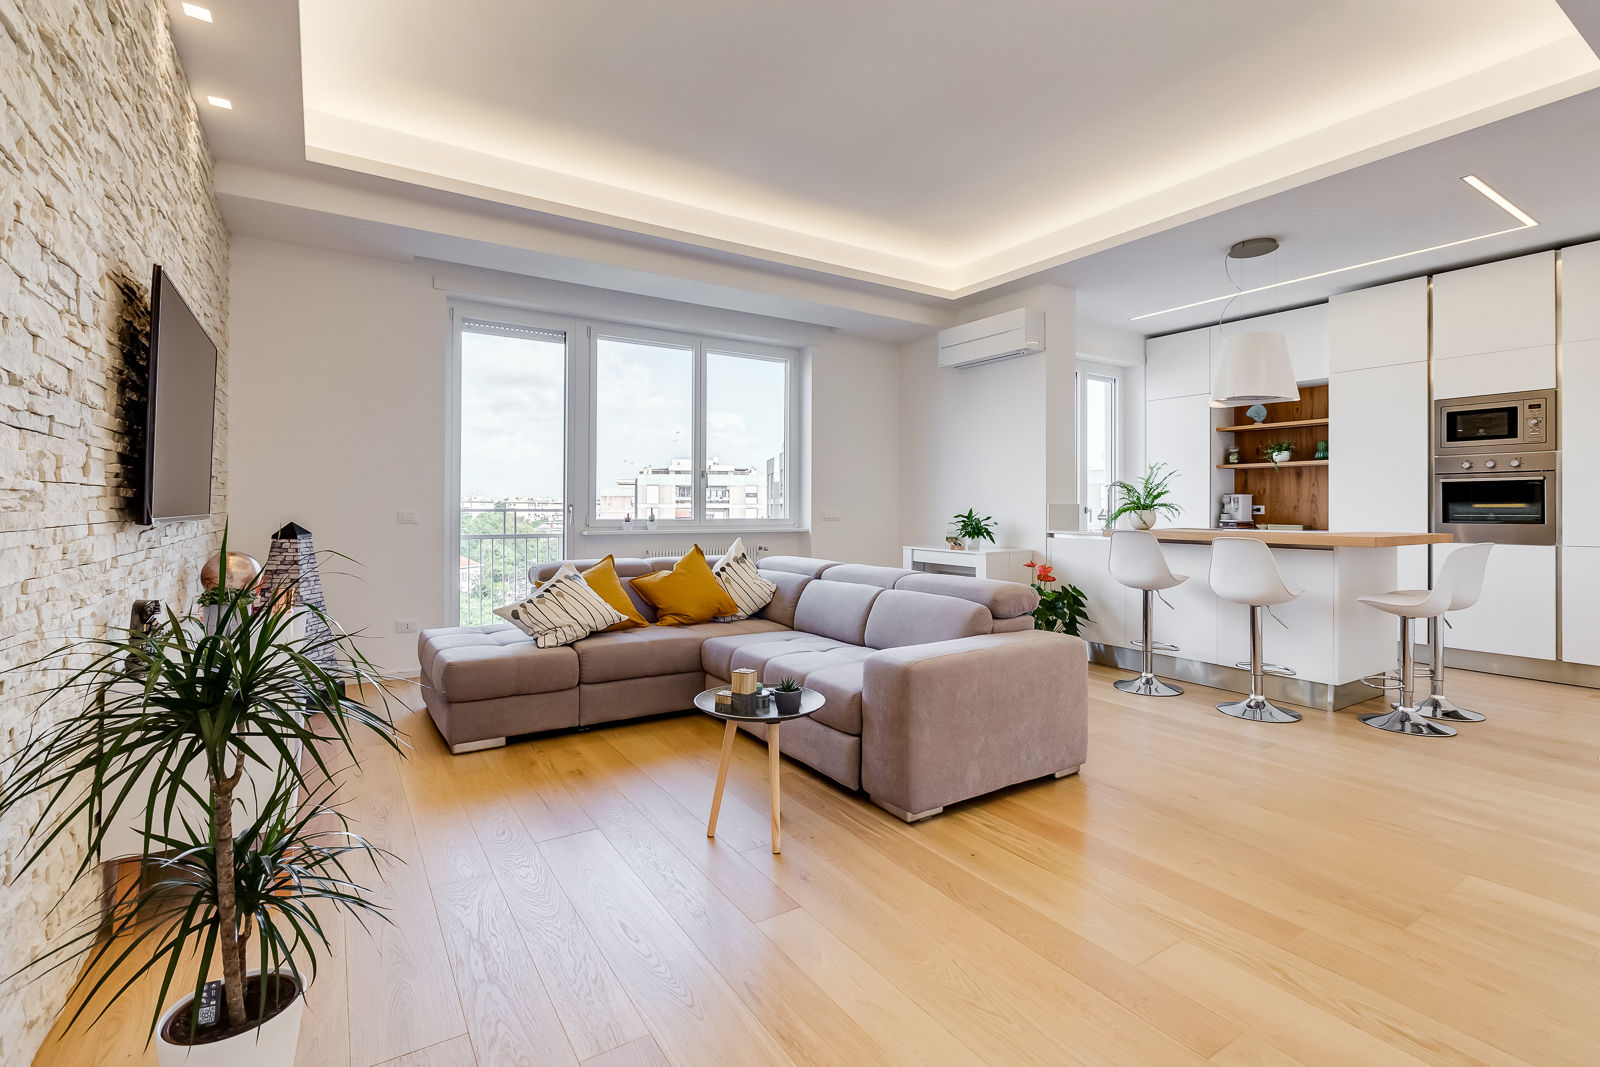 Don Bosco Minimal Design - Eleganza e Semplicità per una Casa Moderna, EF_Archidesign EF_Archidesign Living room